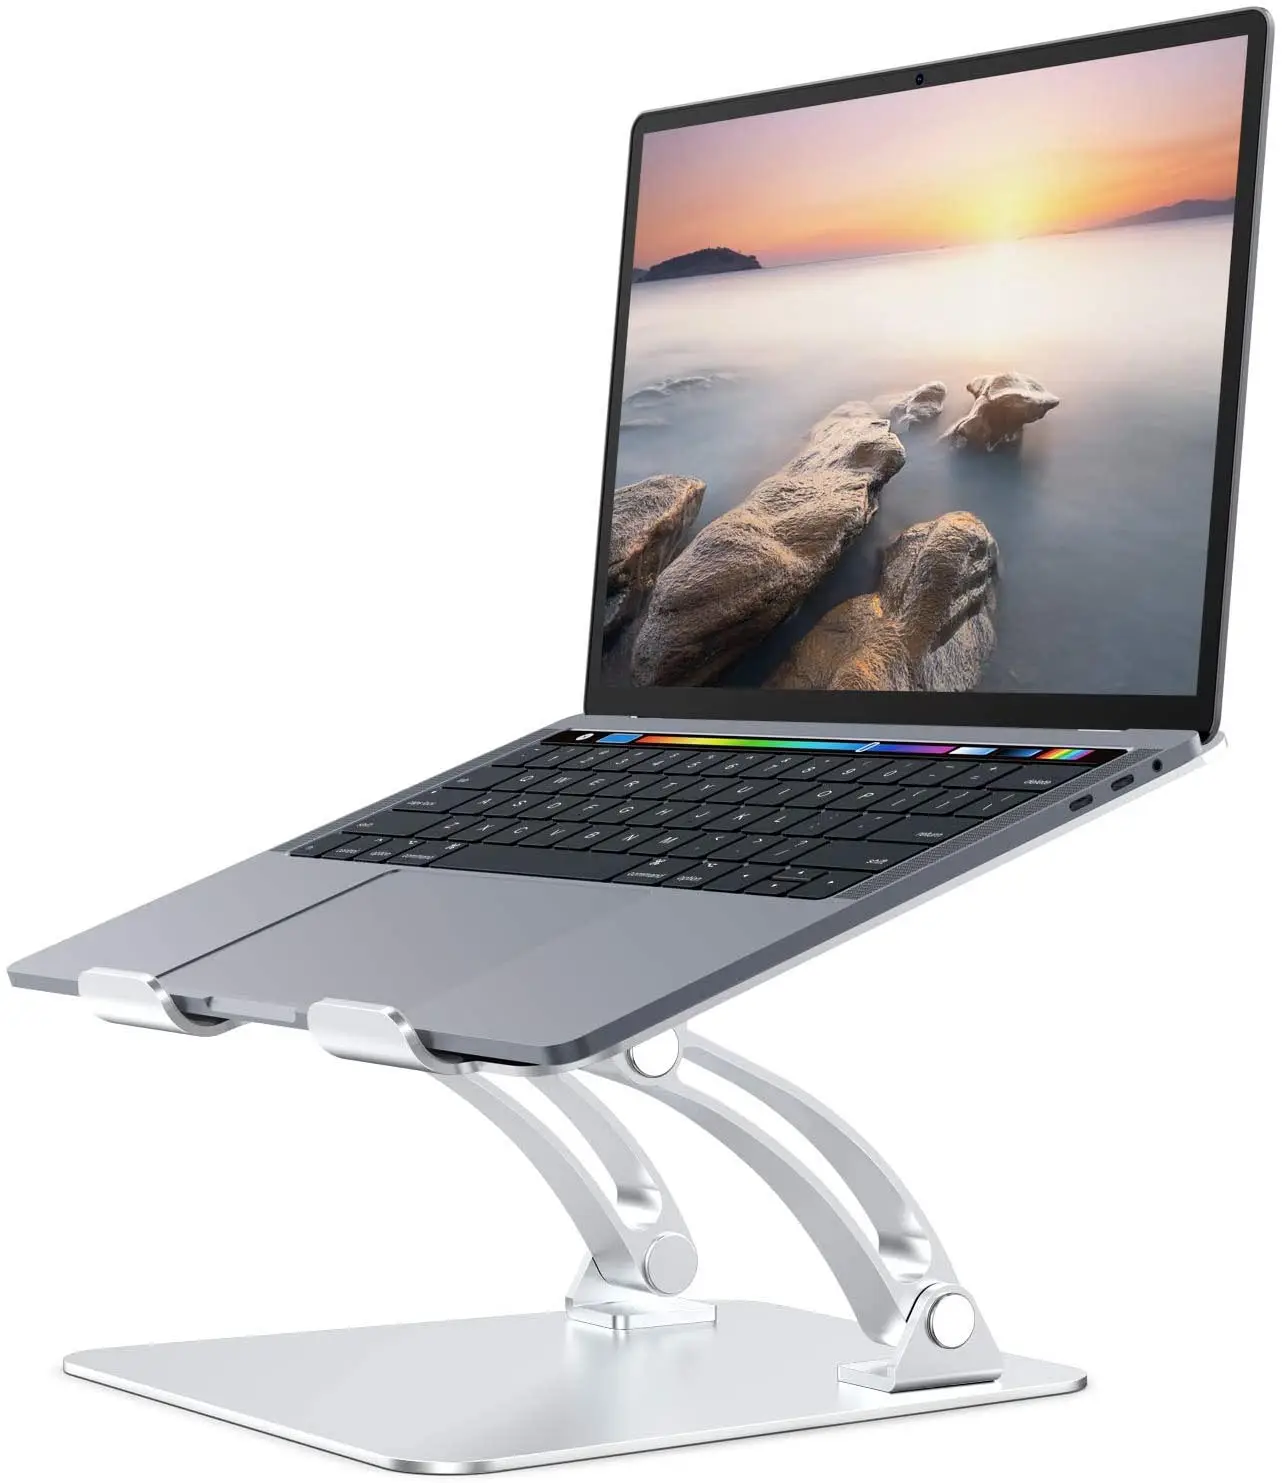 Alüminyum Laptop standı Apple Macbook Macbook hava Macbook Pro ve herhangi bir dizüstü arasında 10 "17"